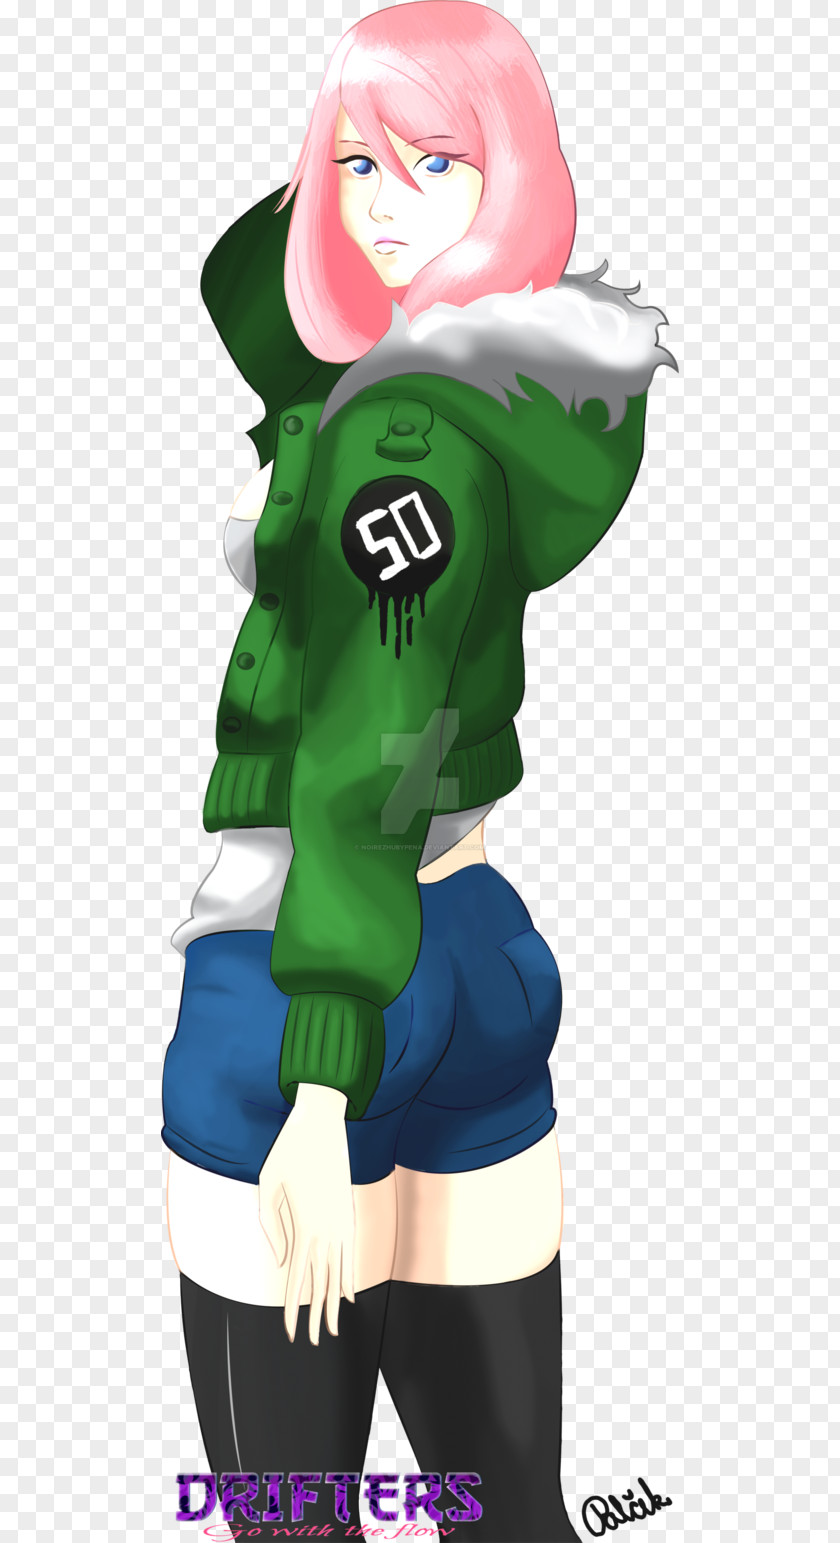 Stormbreaker Cartoon Green Mascot Outerwear PNG